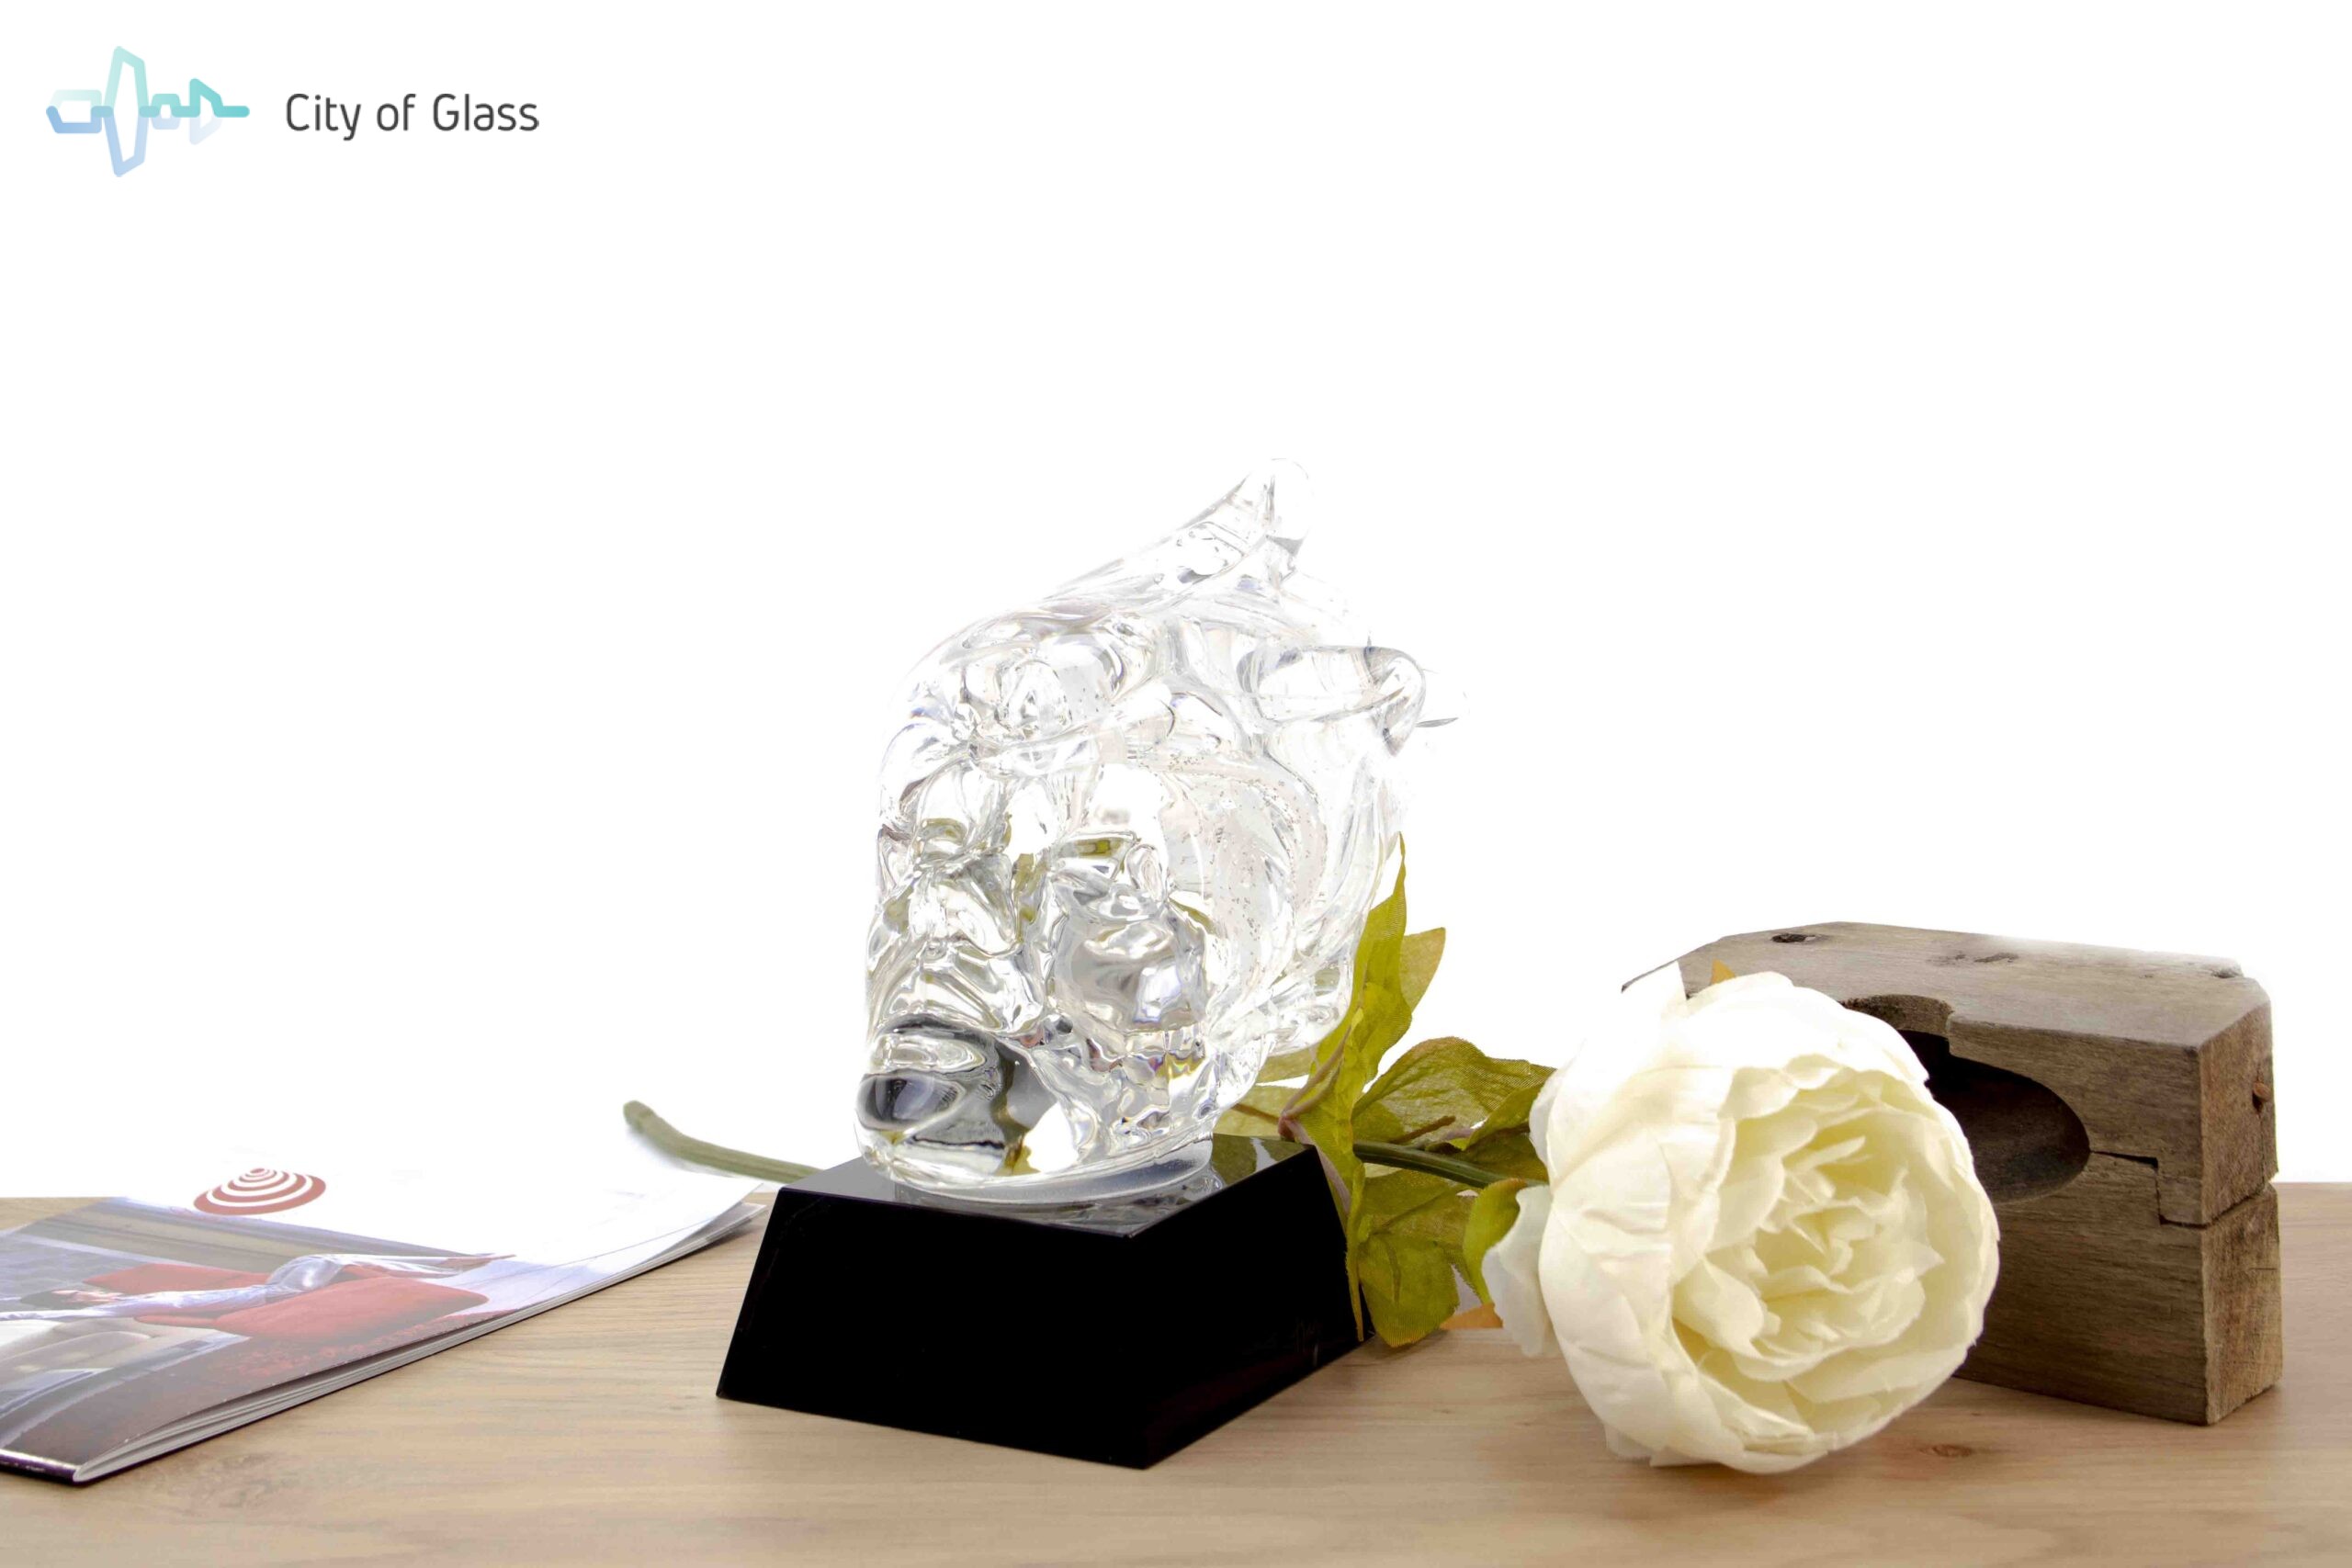 Kristallen Glassculptuur Winter Van Loranto 18 Cm City Of Glass